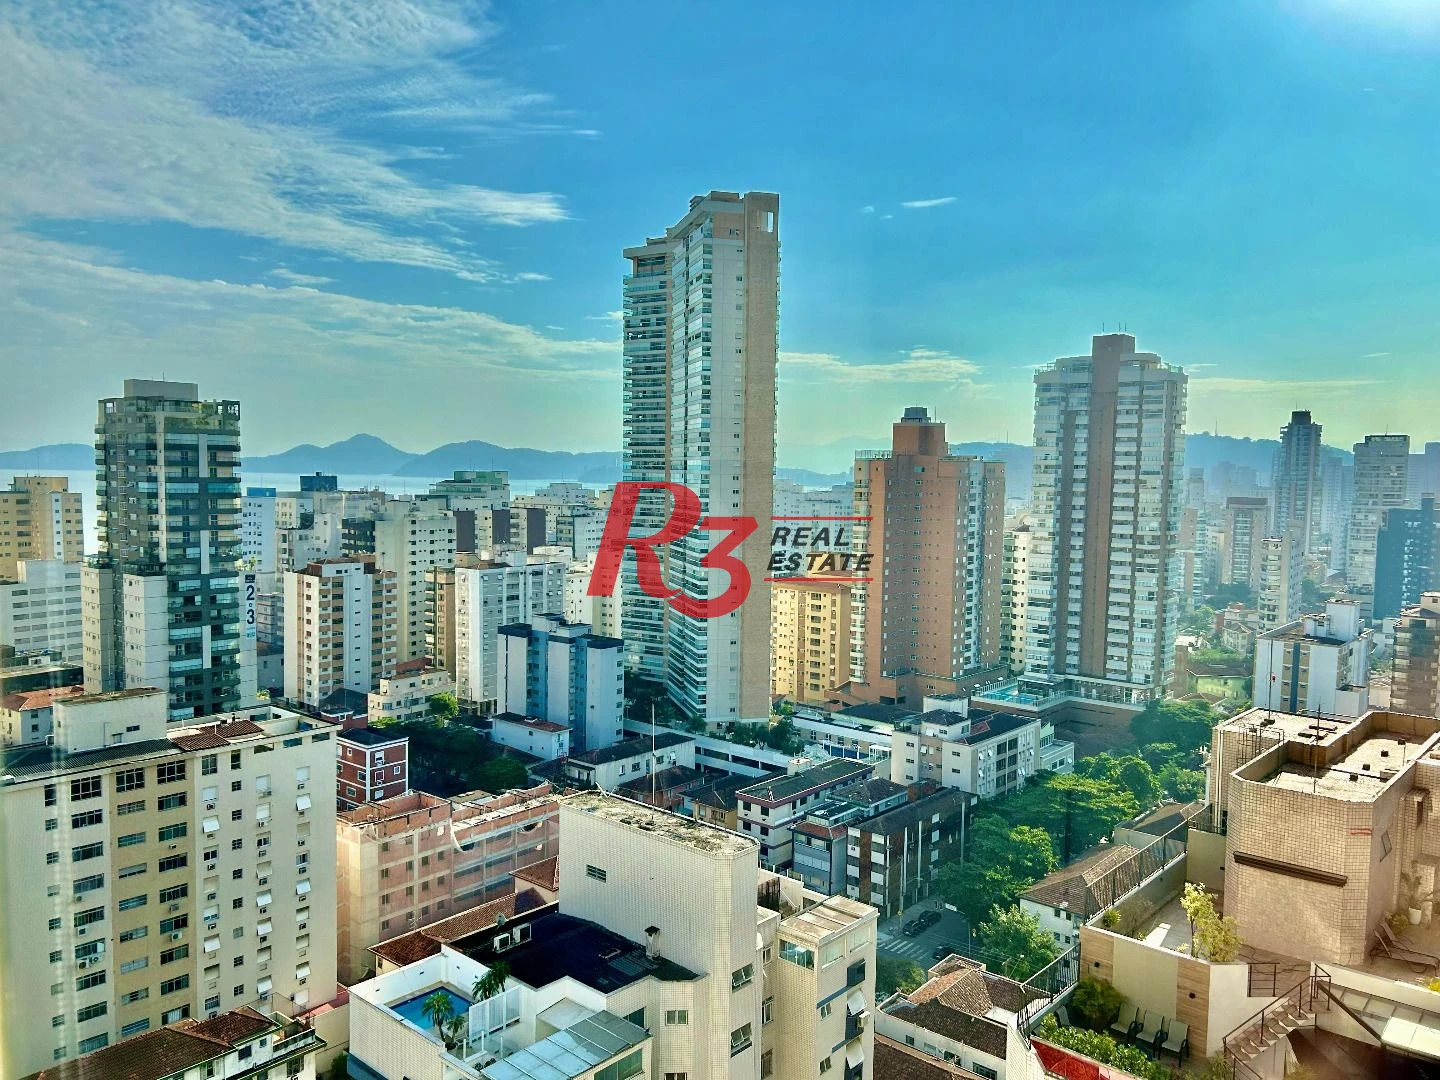 Apartamento com 3 dormitórios à venda, 155 m² por R$ 2.000.000,00 - Embaré - Santos/SP